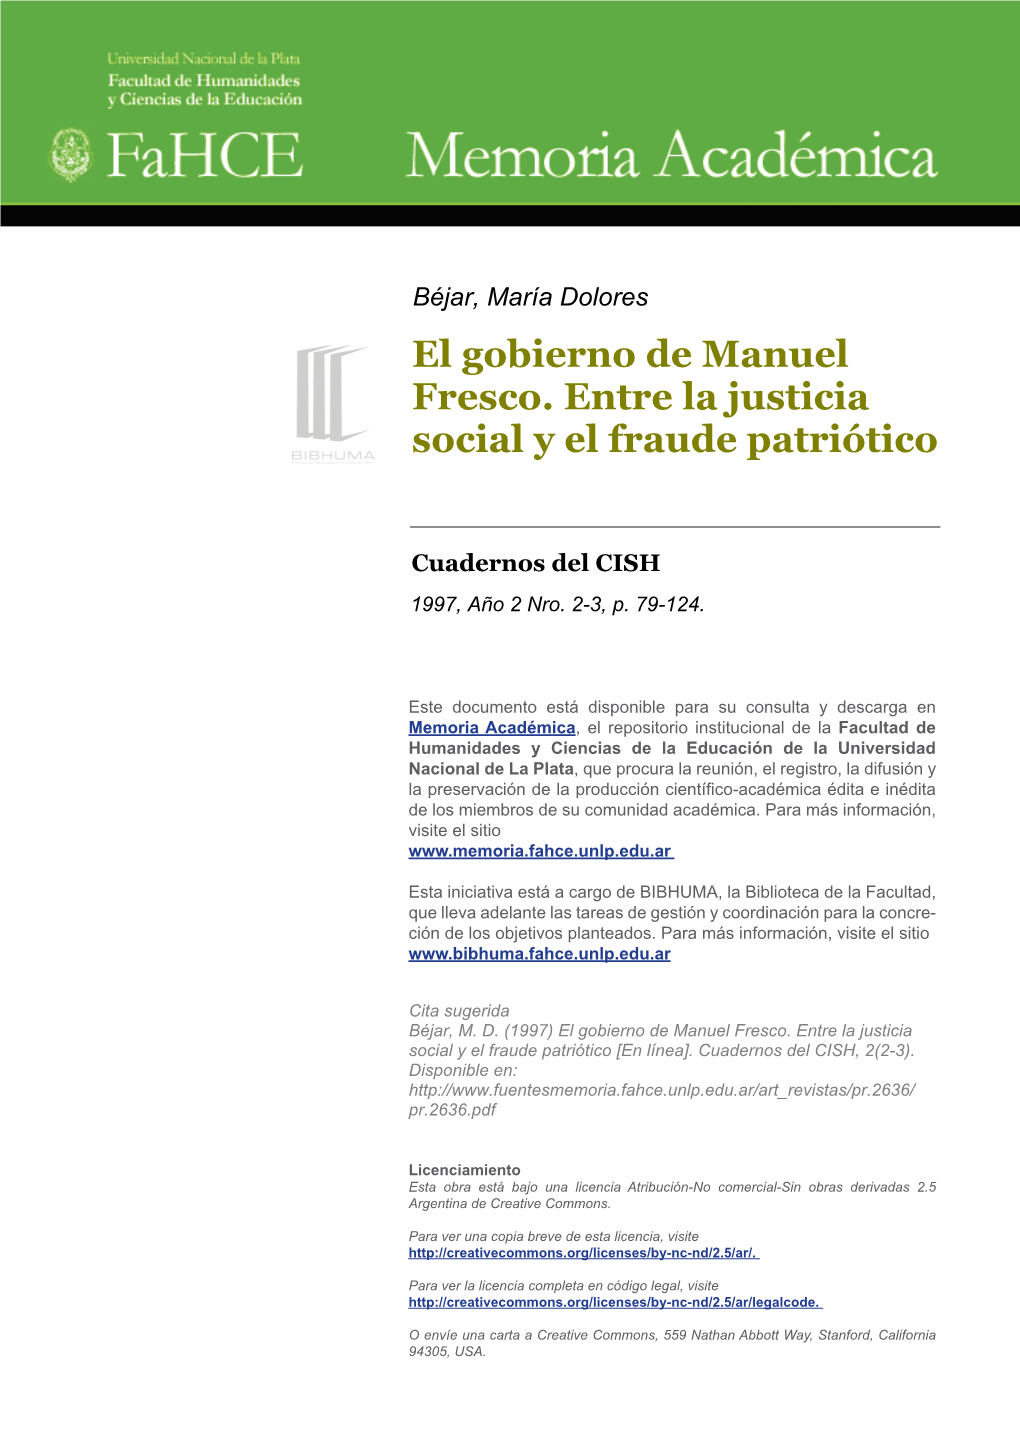 El Gobierno De Manuel Fresco. Entre La Justicia Social Y El Fraude Patriótico